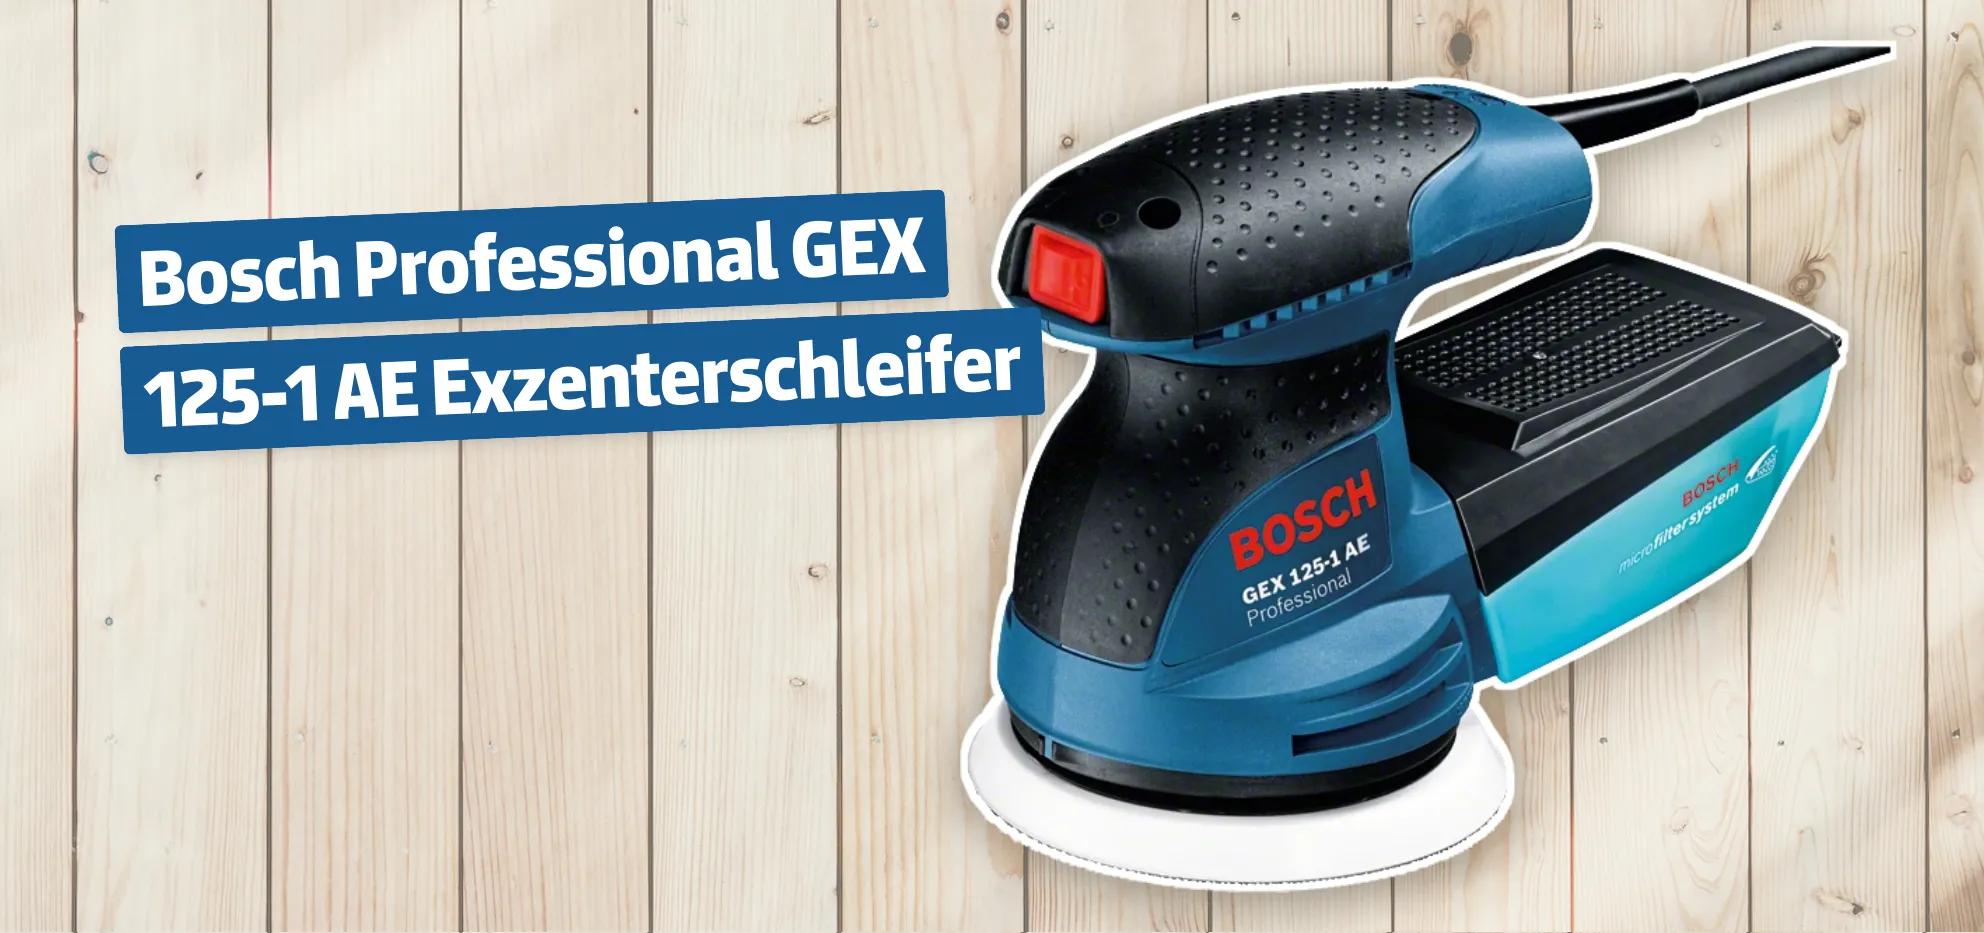 Bosch Professional GEX 125-1 AE Exzenterschleifer